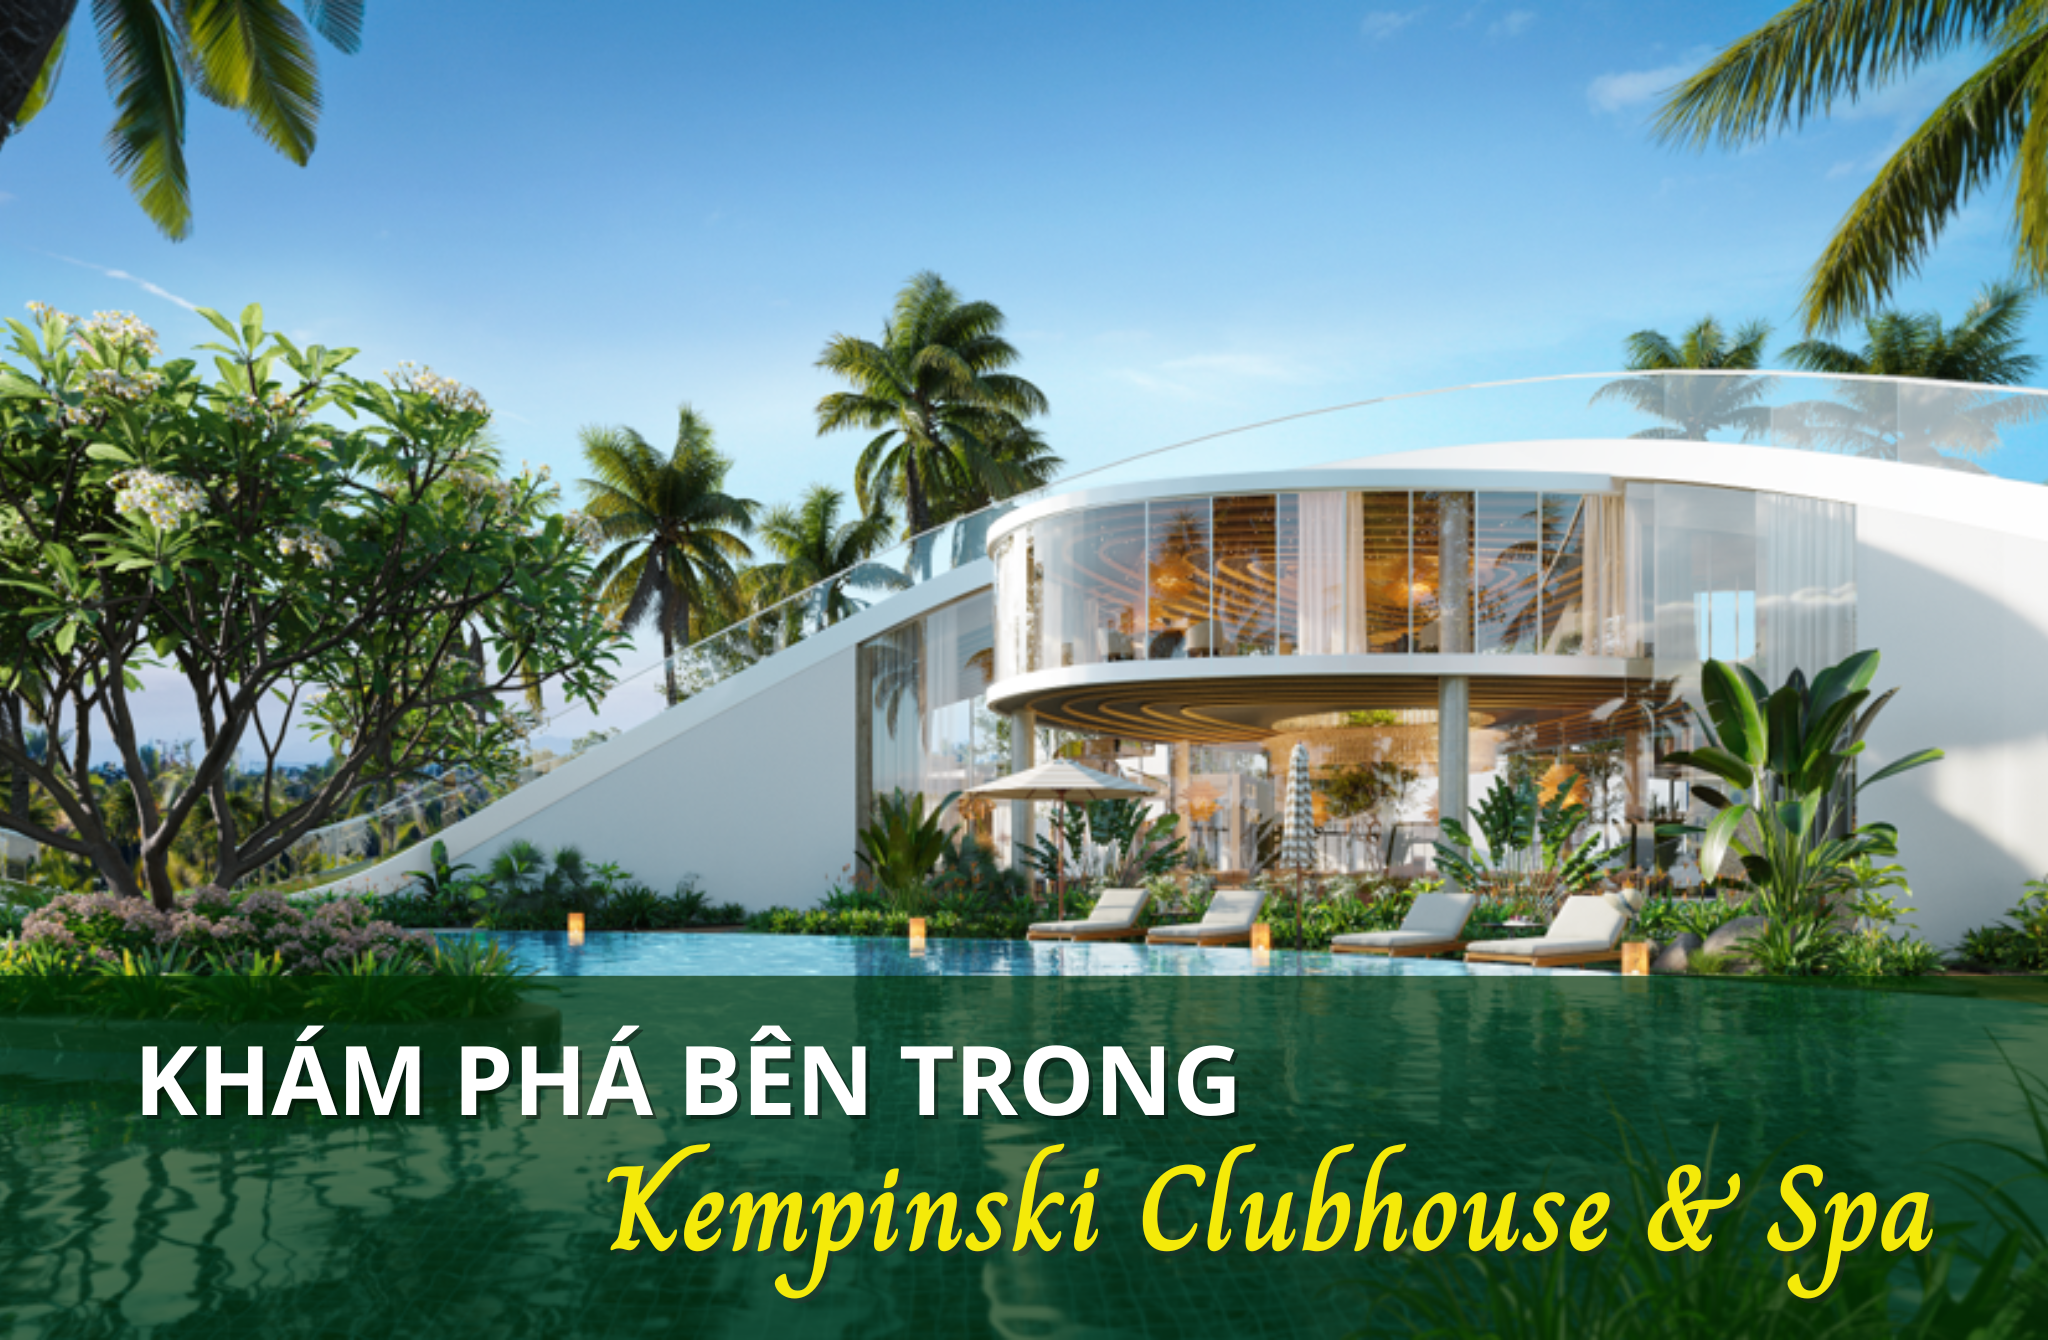 Khám phá Kempinski Clubhouse and Spa tại Ecovillage Saigon có gì?